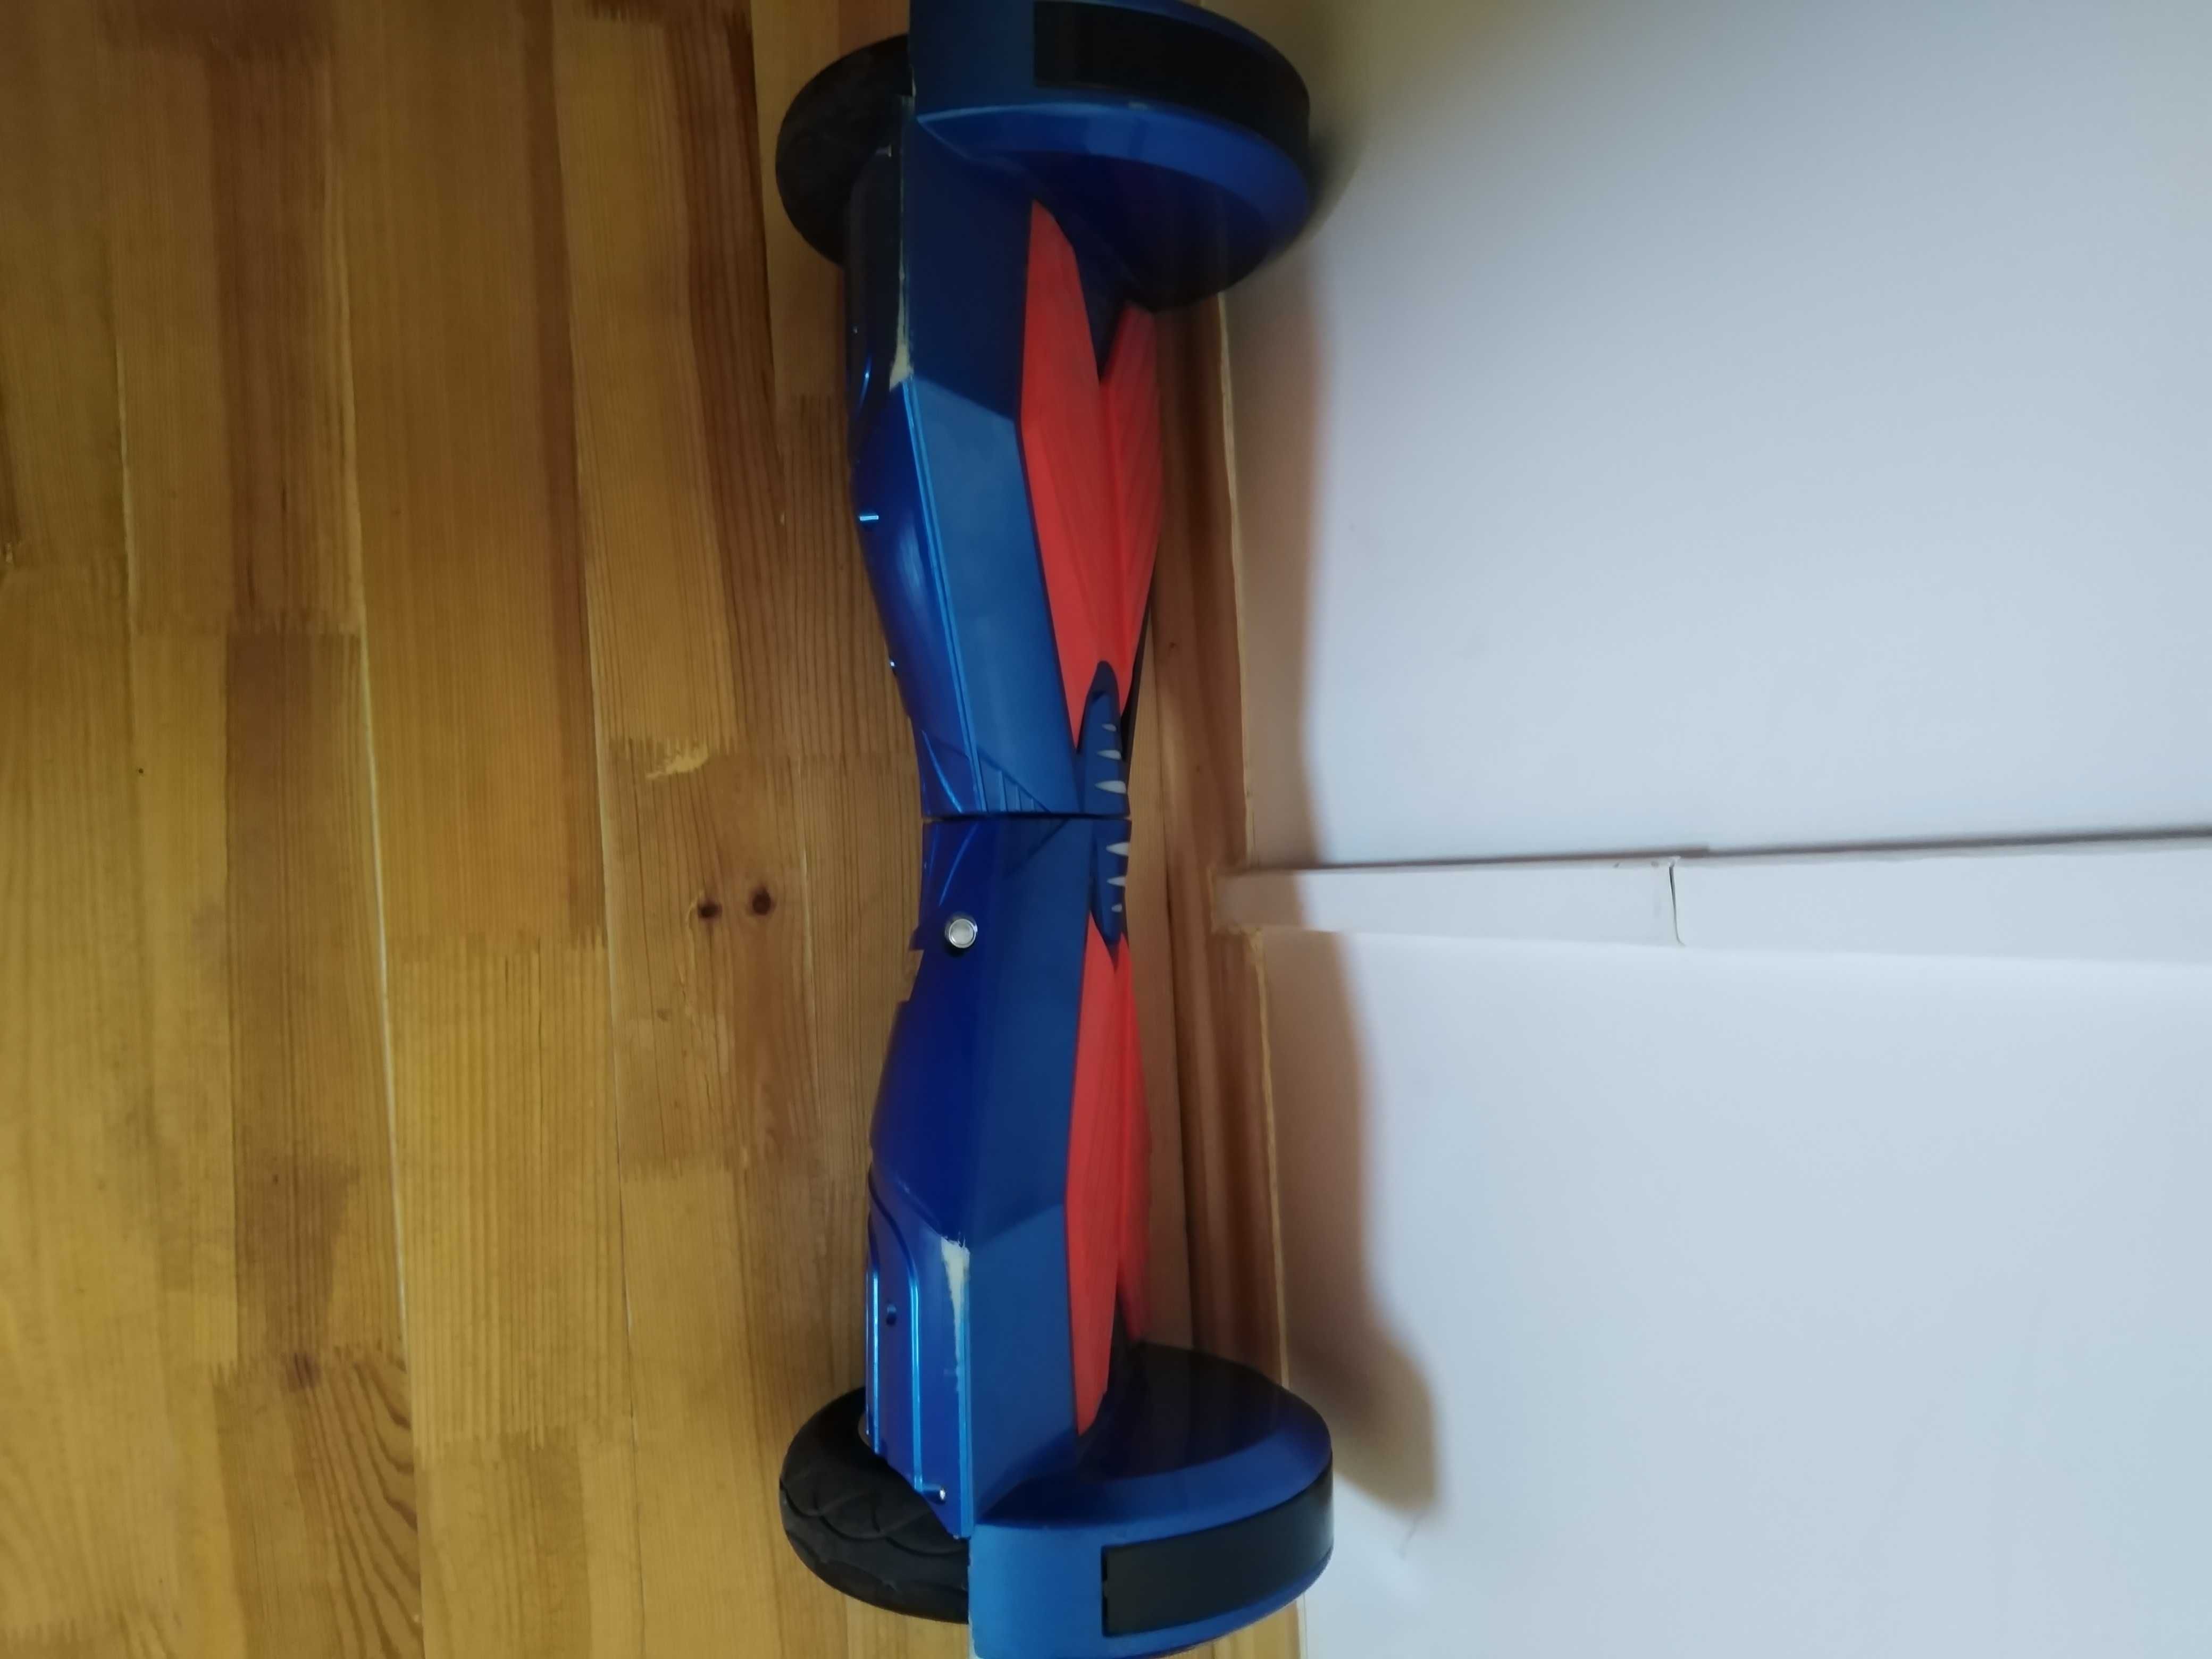 Гироборд синий + красный с пультом  д/у и bluetooth